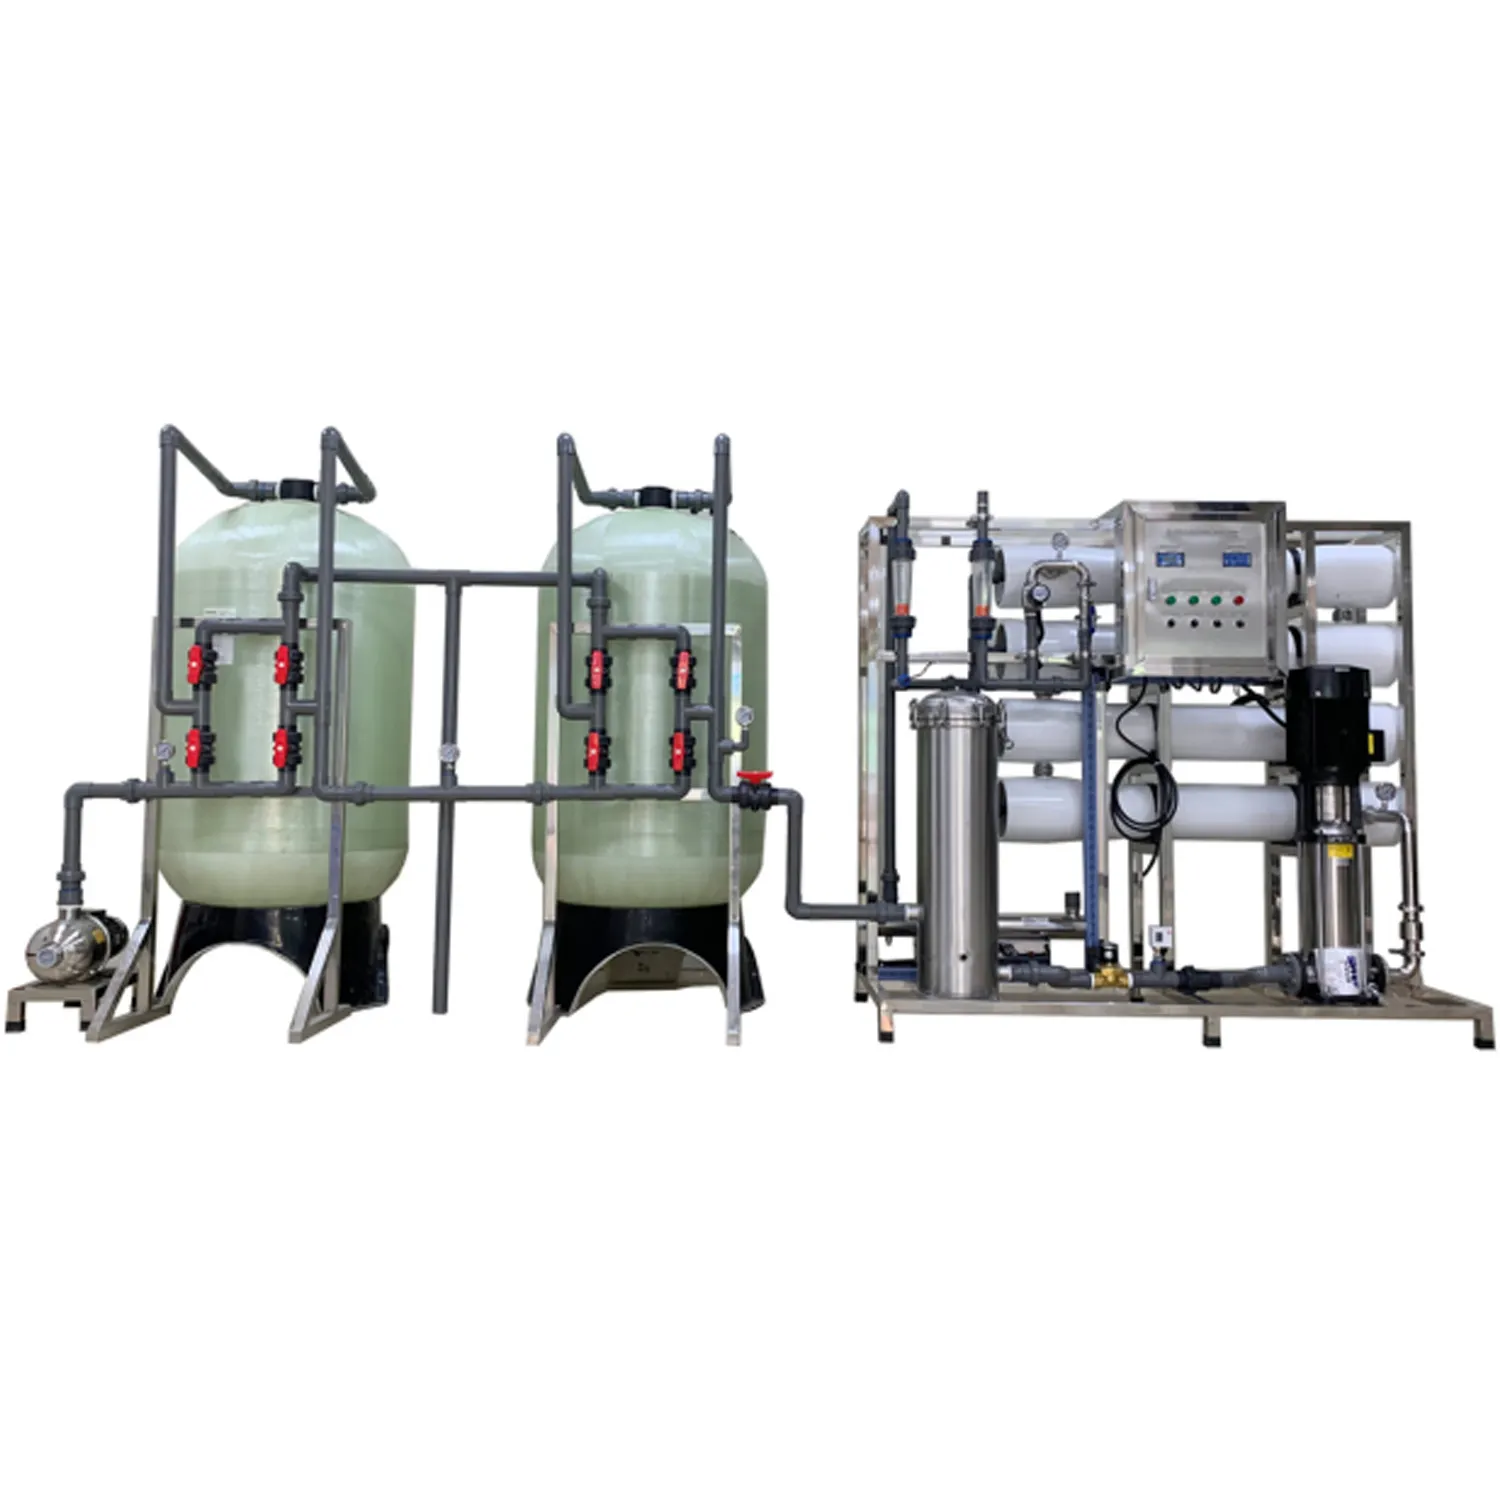 Commerciale RO impianto di desalinizzazione di trattamento delle acque filtro osmosi inversa membrana di rimozione sale per bere